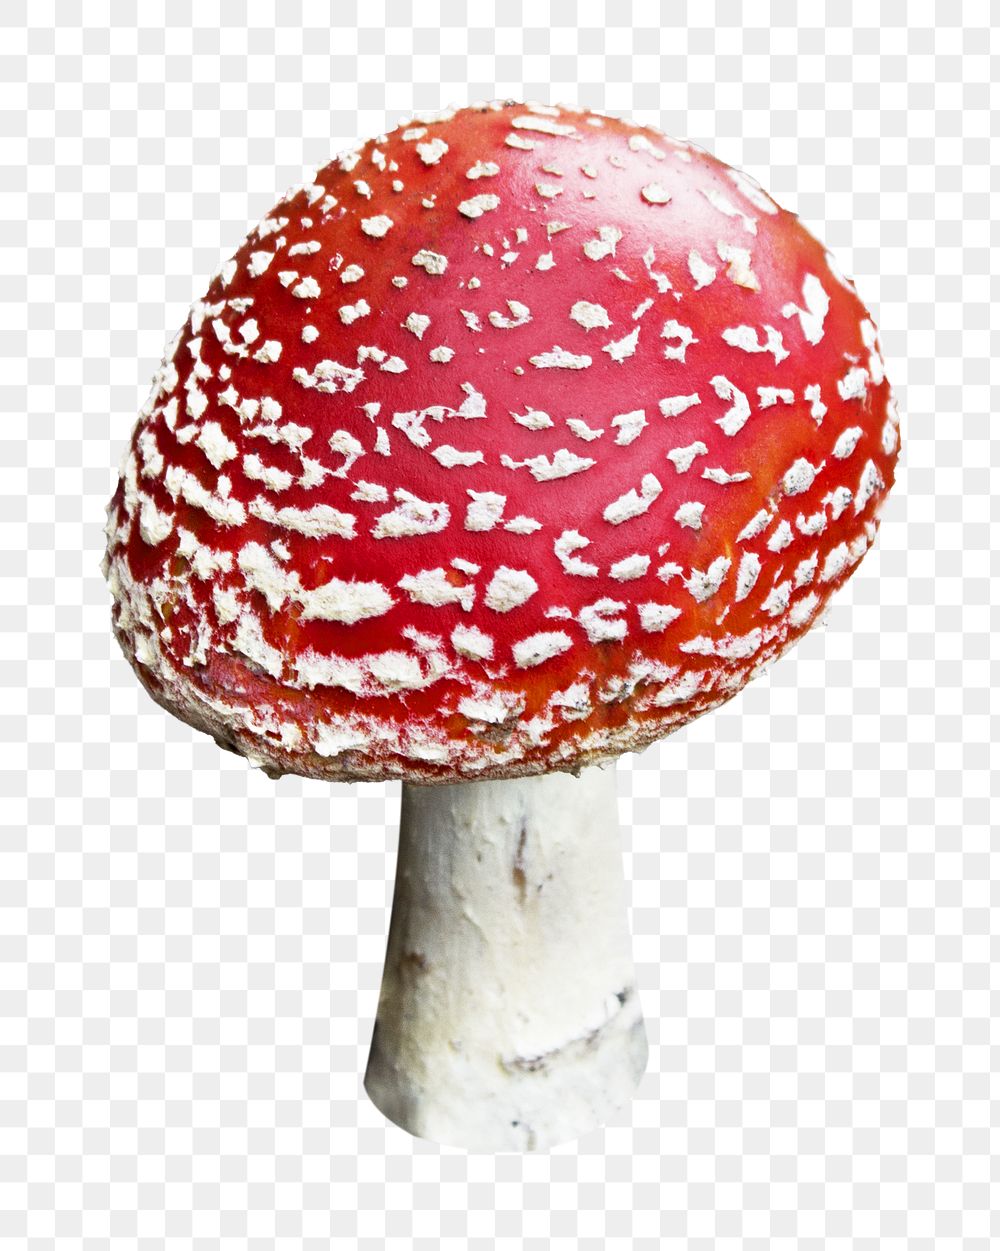 Red mushroom png sticker, transparent background 